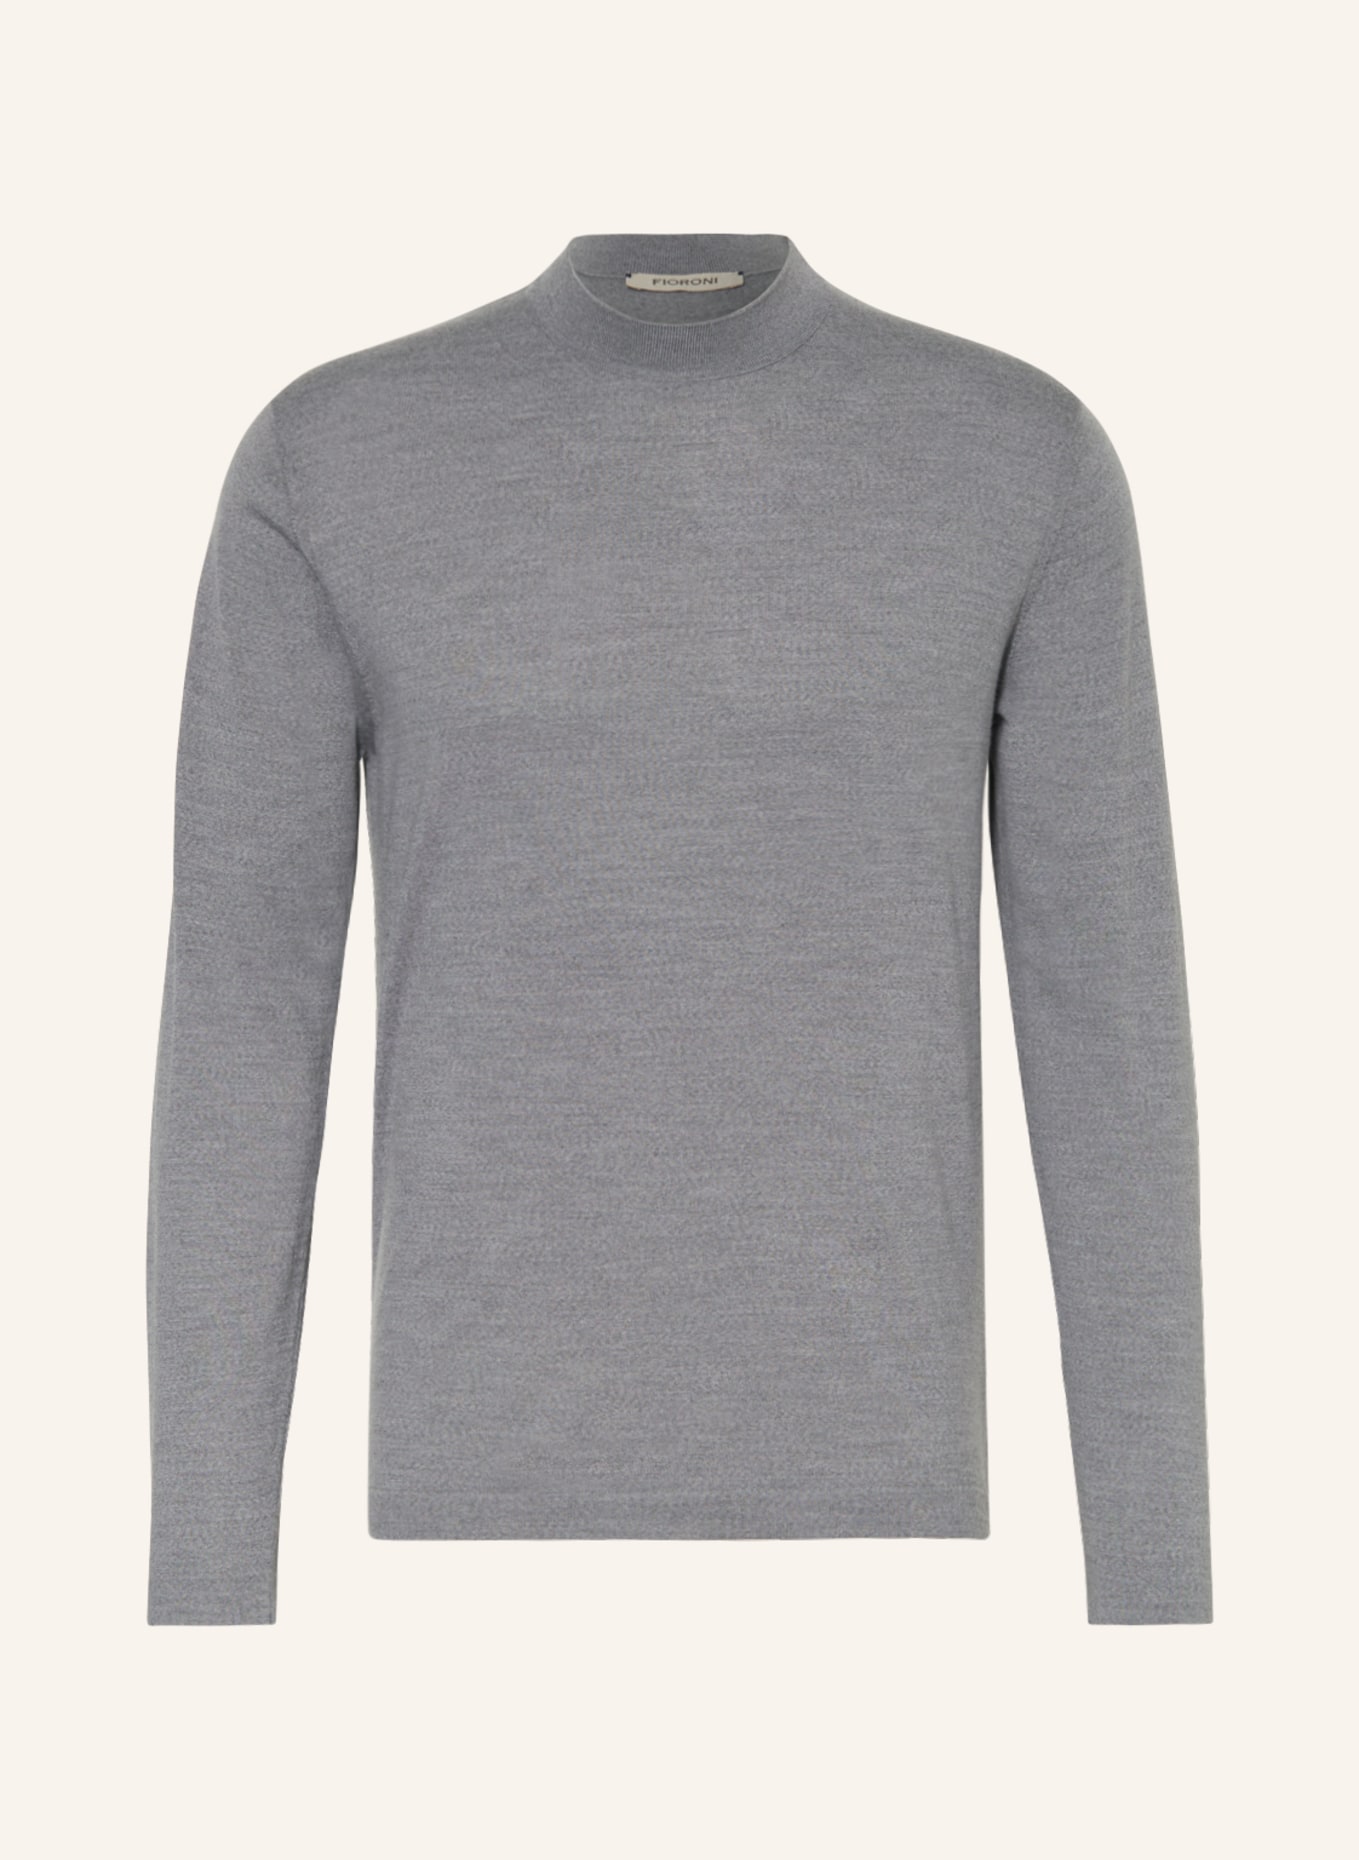 FIORONI Pullover, Farbe: GRAU (Bild 1)